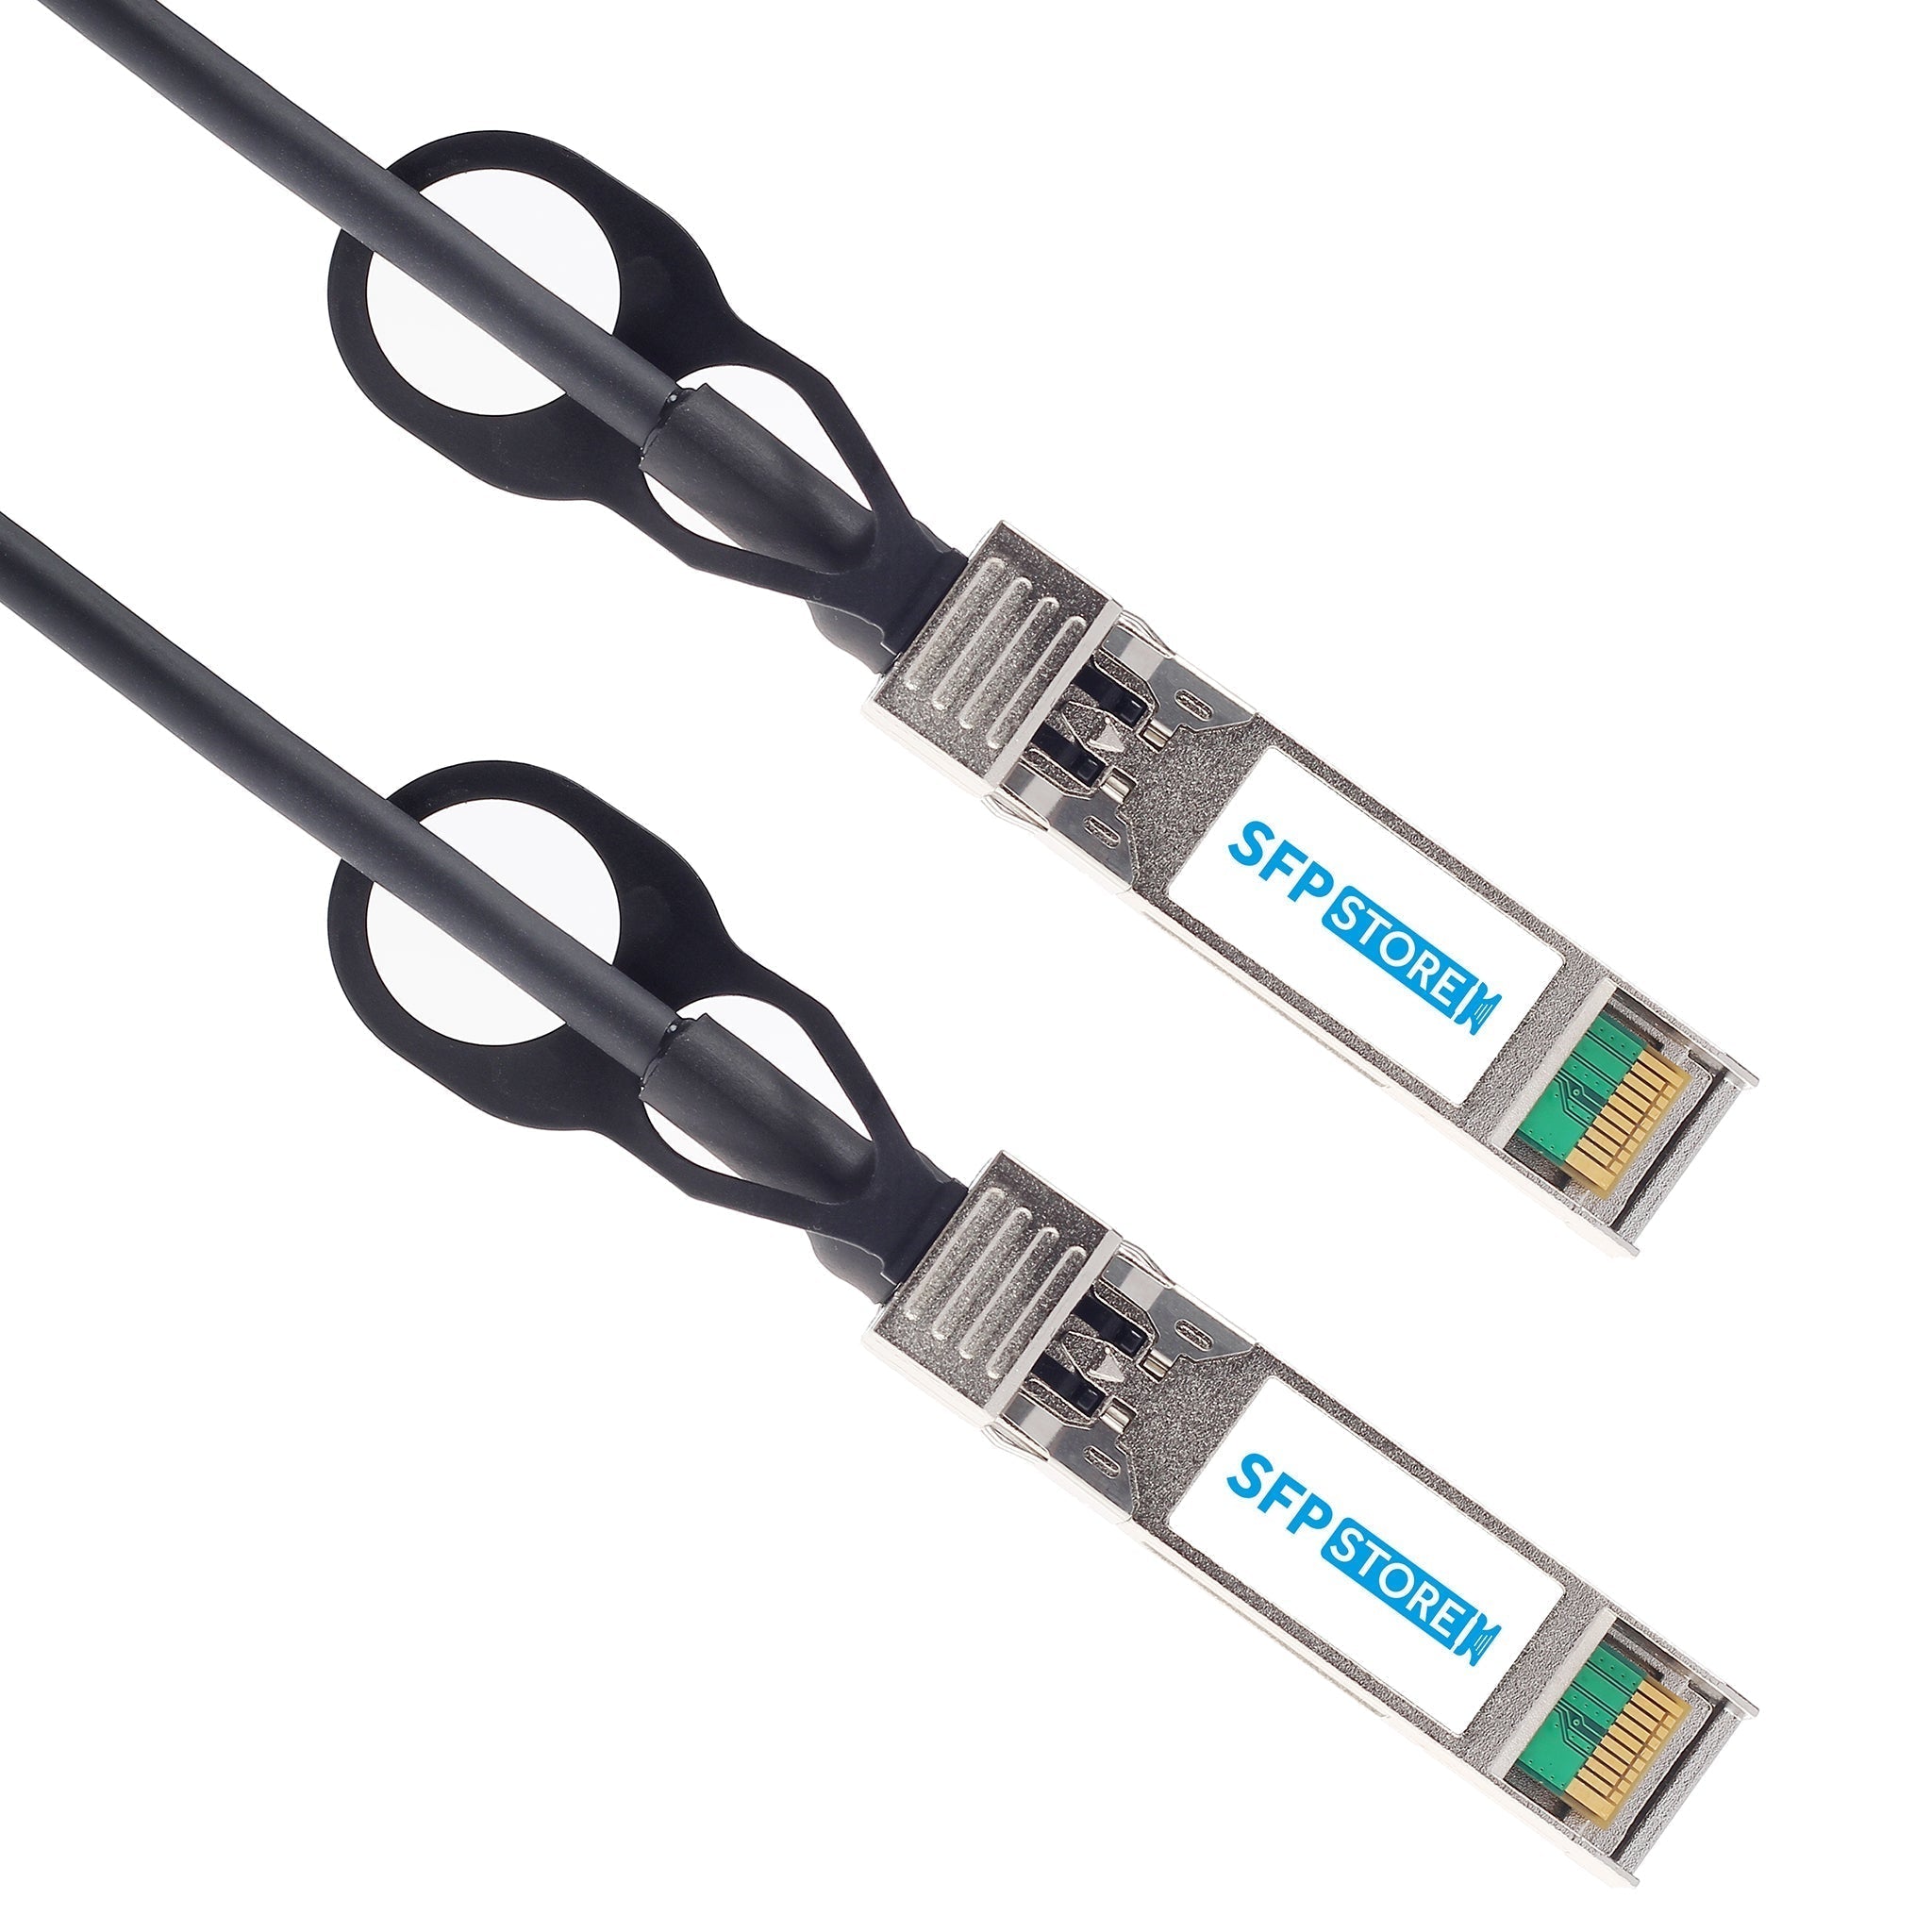 10G-SFPP-TWX-P-0501-C - 5m Brocade/Ruckus Compatible 10G SFP+ Passive Direct Attach Copper Twinax Cable